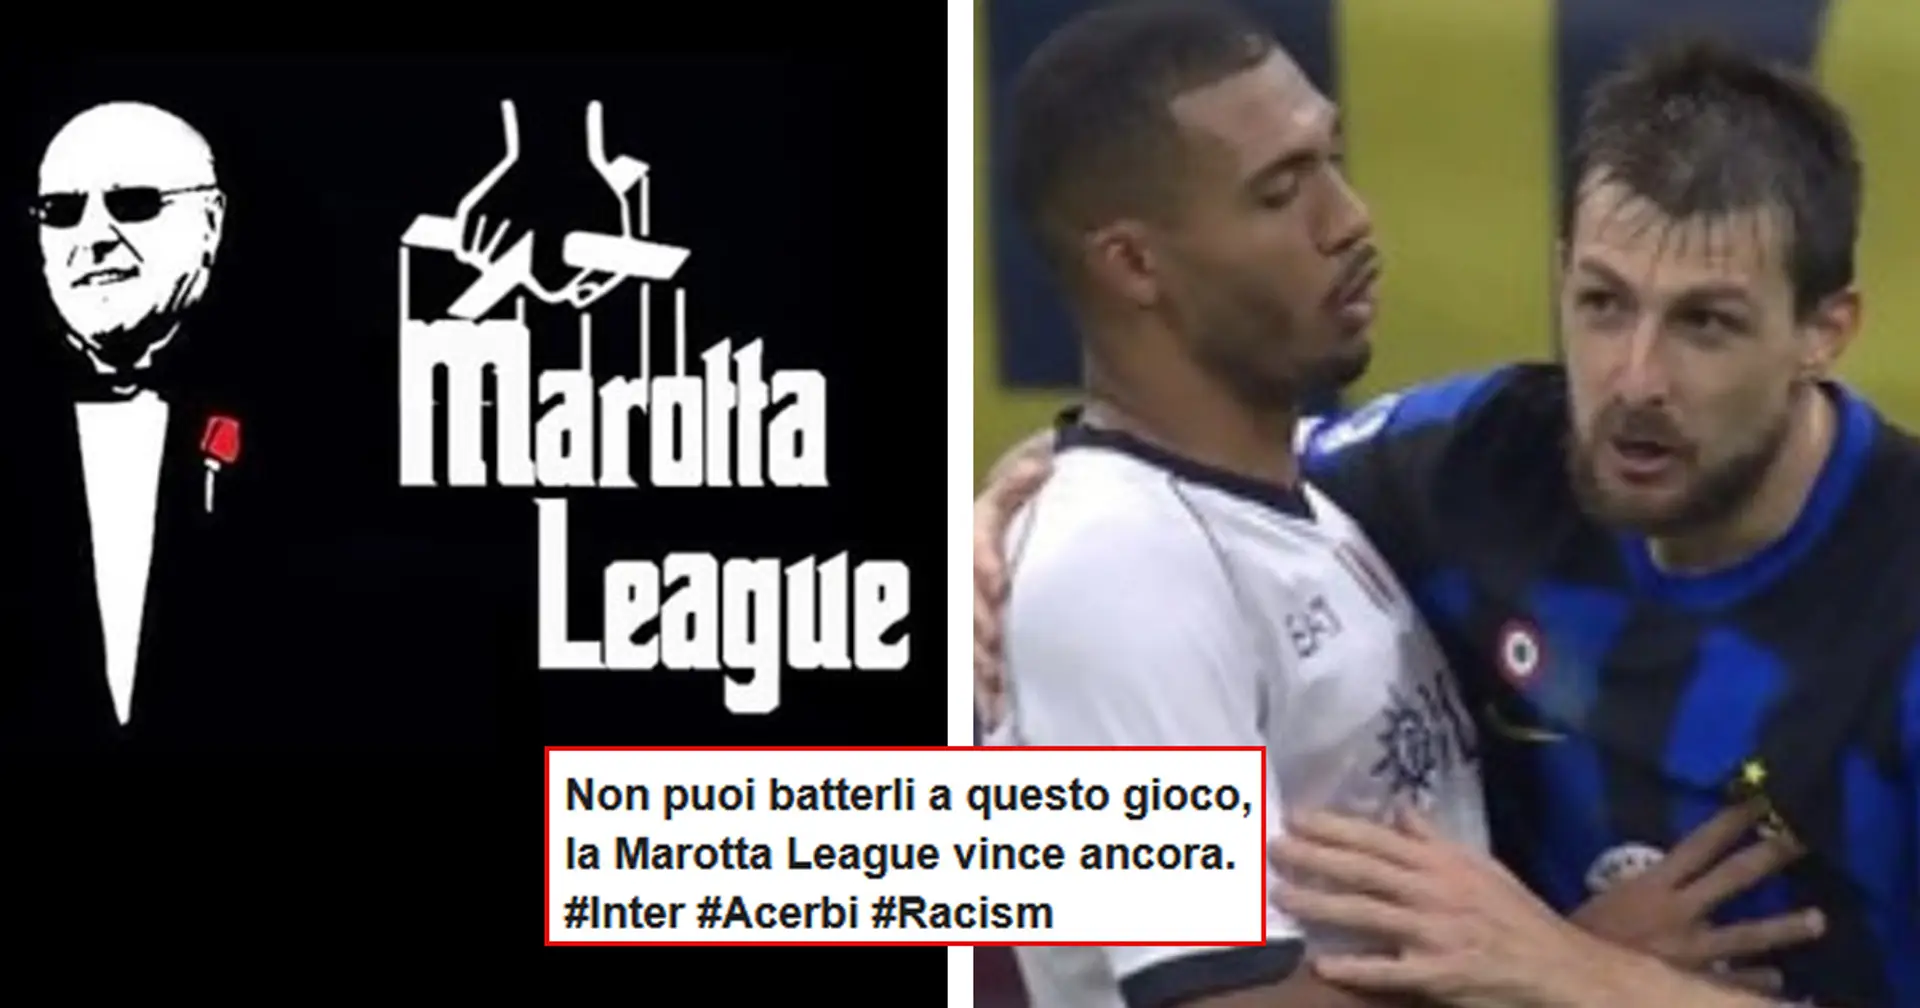 Acerbi assolto dalle accuse di razzismo, la rabbia dei tifosi bianconeri: "La FIGC ti tutela, se non ti chiami Juve!"